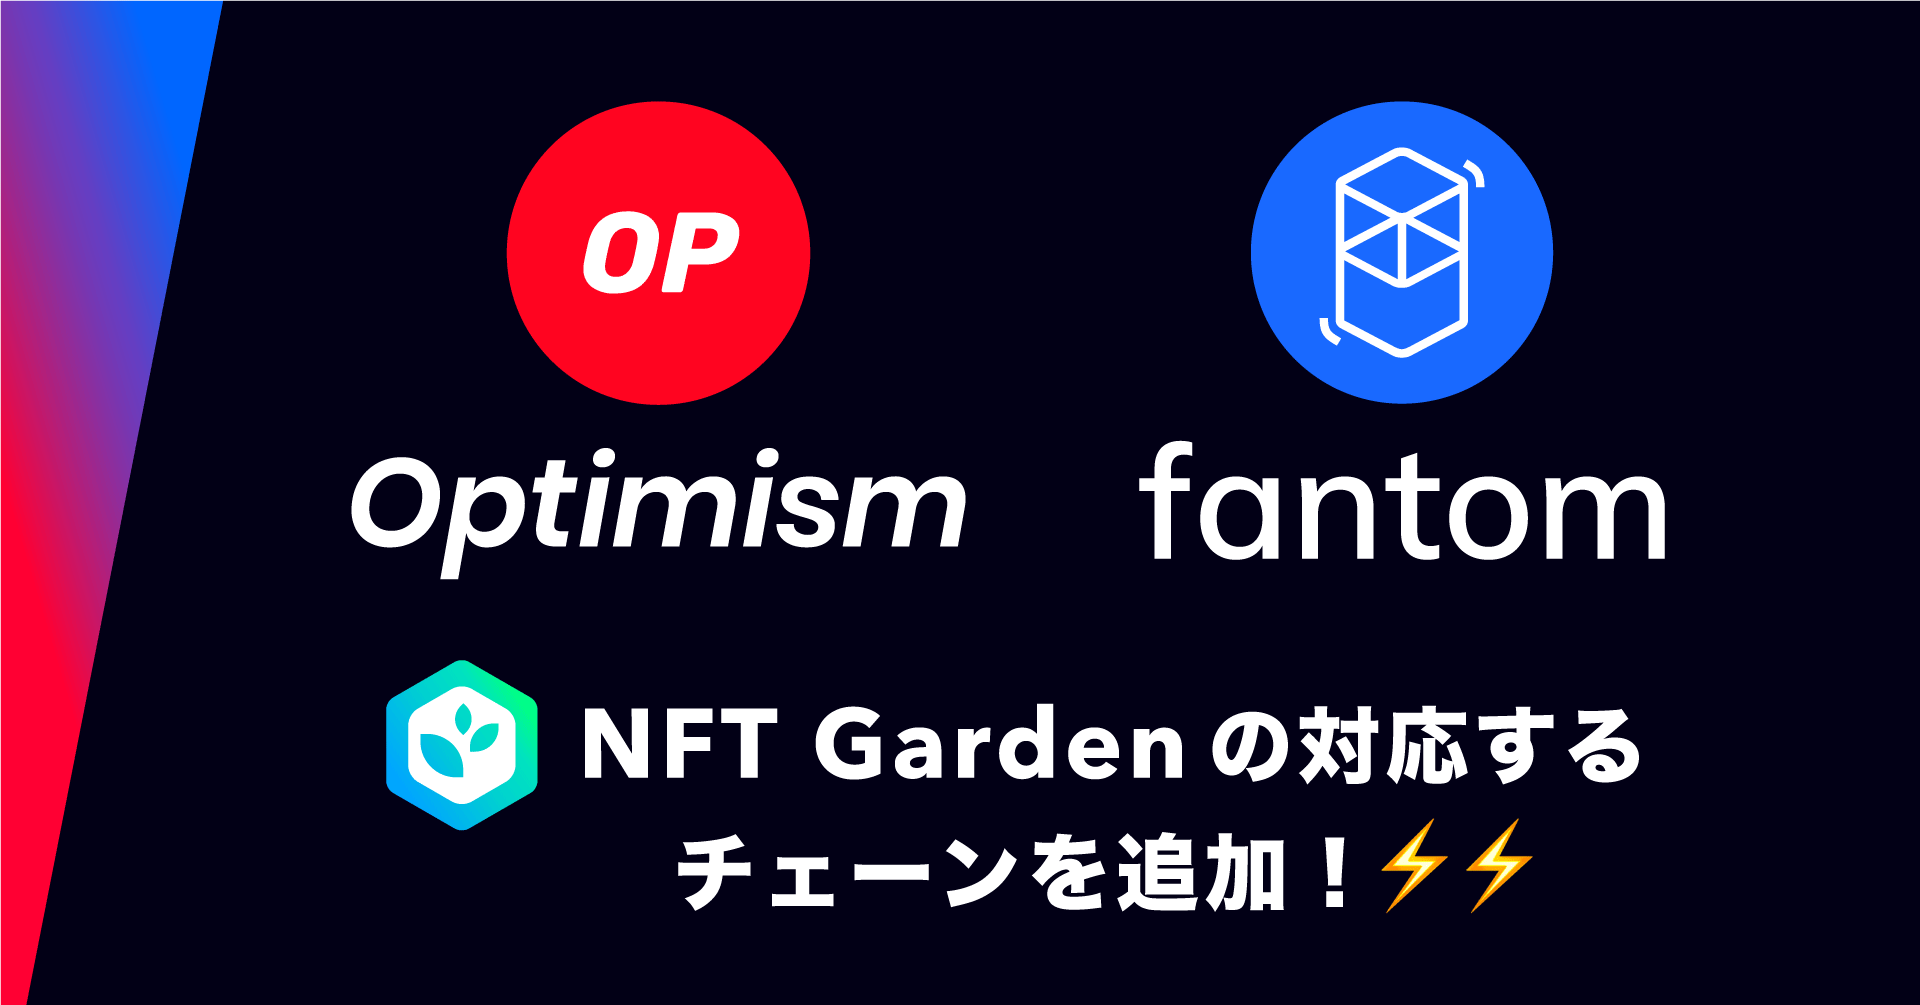 Connectiv、NoCode NFT作成プラットフォーム『NFT Garden』で『Optimism』『Fantom』に対応